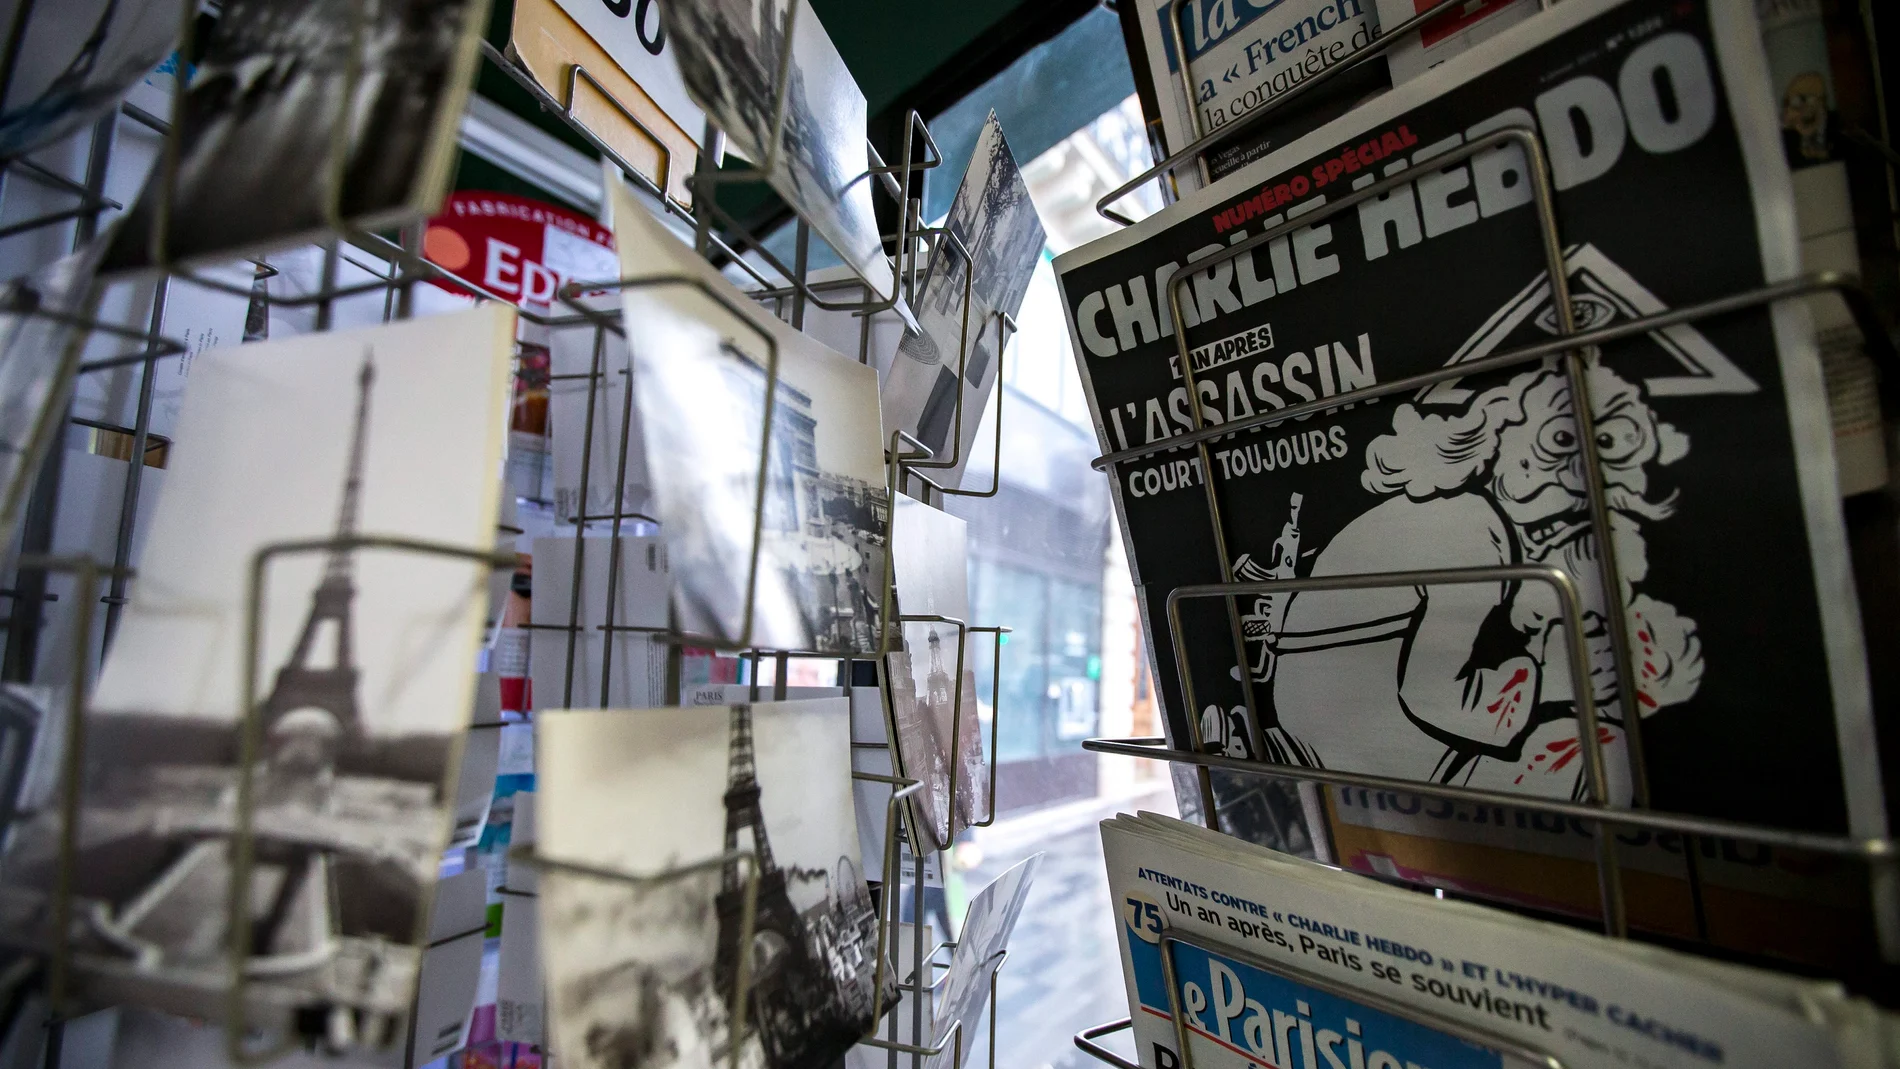 Una copia del número especial publicado por el semanario satírico "Charlie Hebdo"